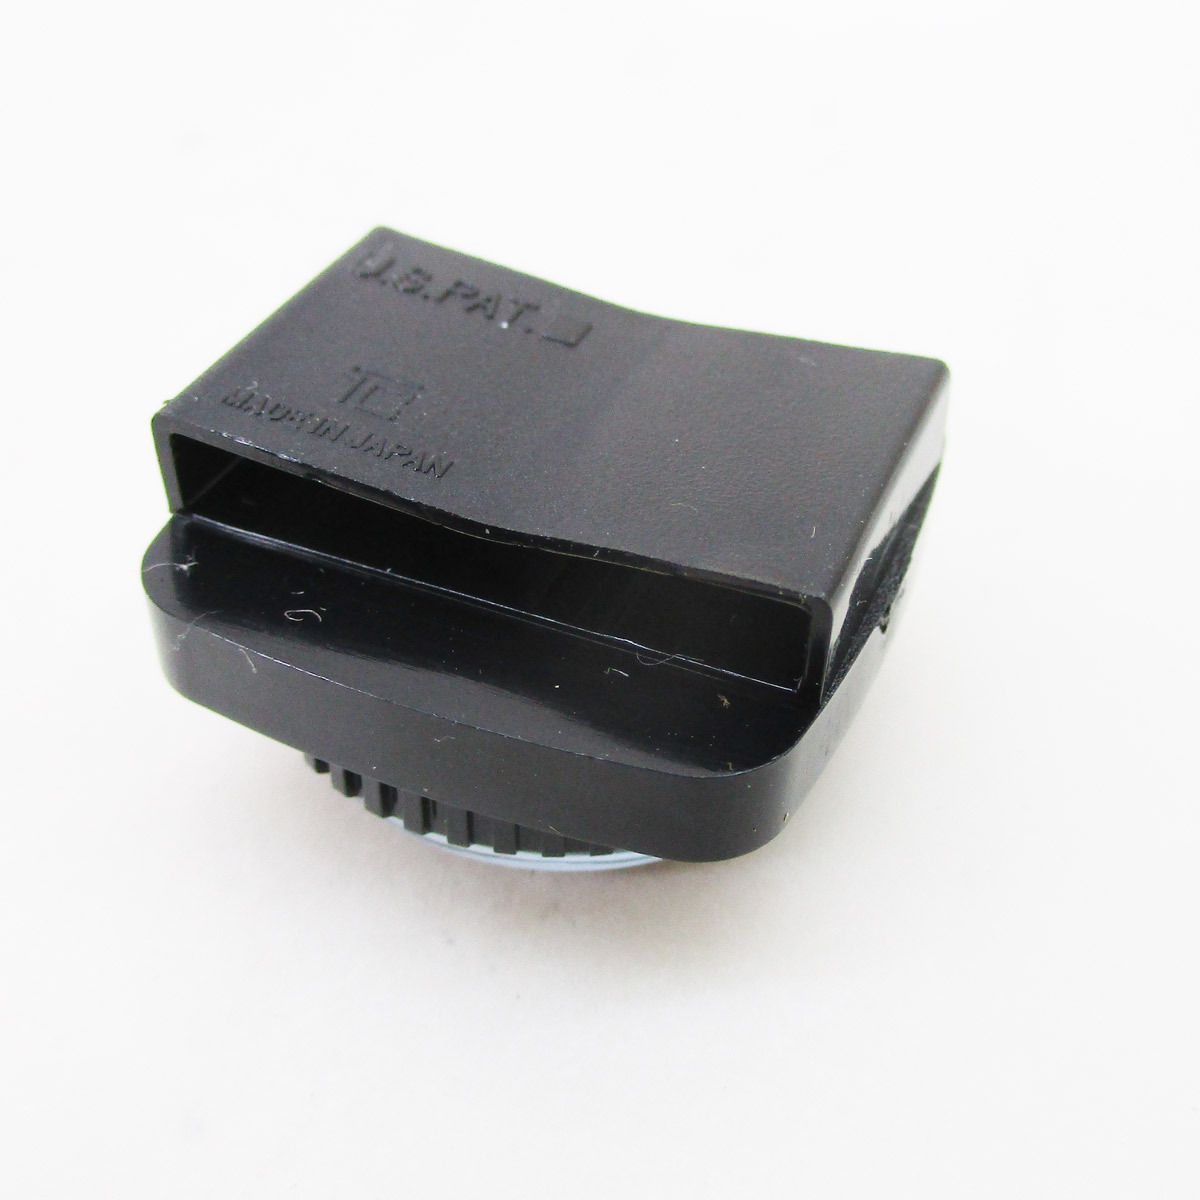 送料無料 方位磁石 リストコンパス ダイバーリストコンパス 100m防水 ベルト通しタイプ 日本製 カラー ブラック_画像5